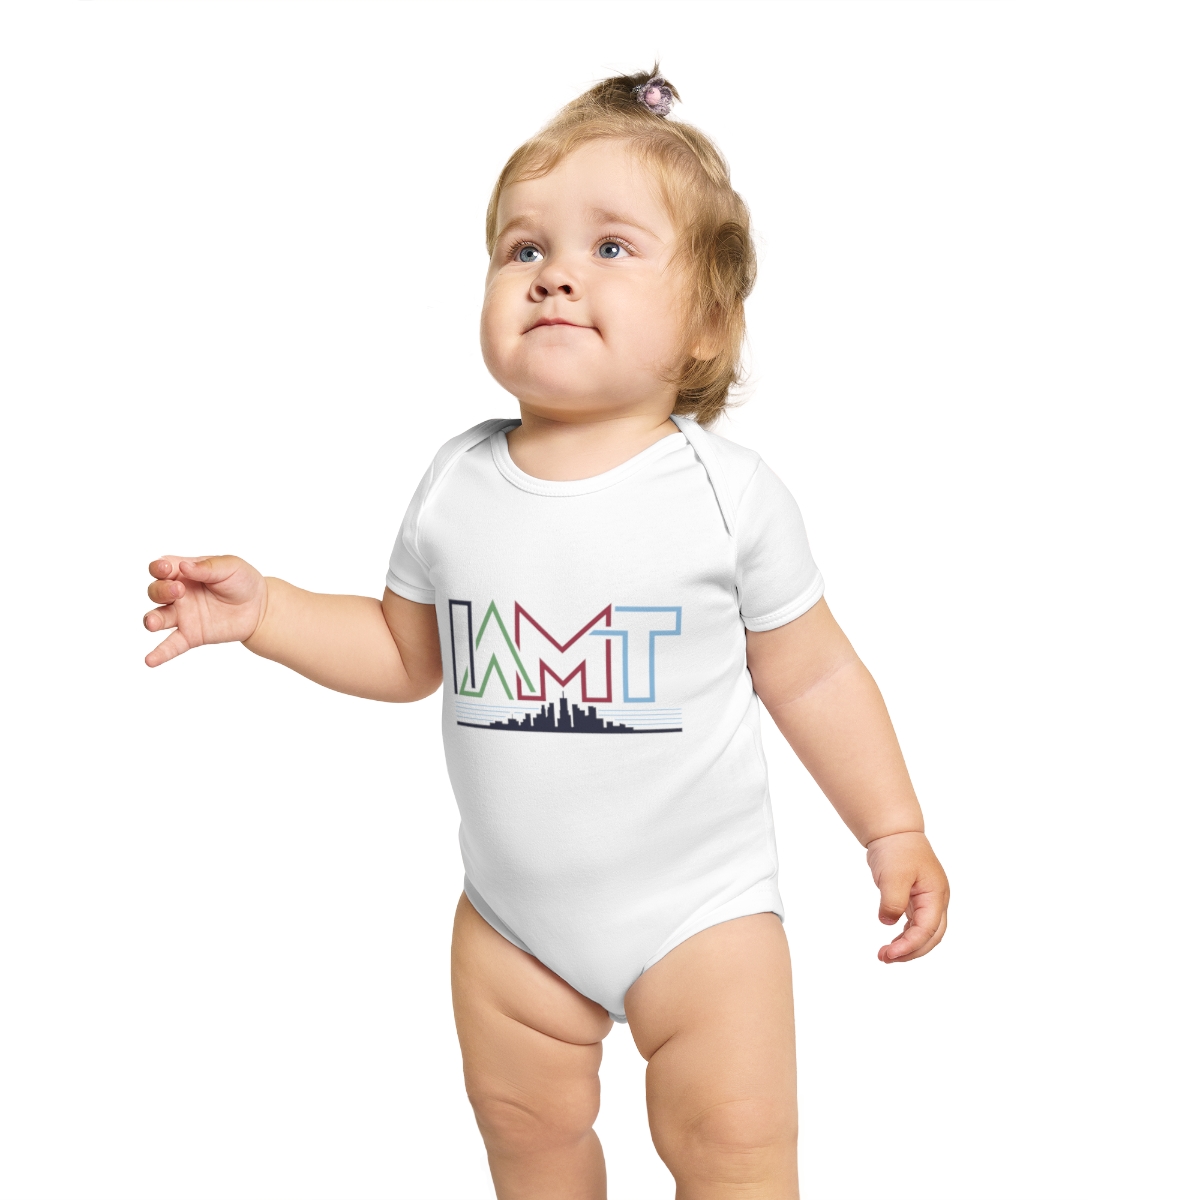 Short Sleeve Baby Bodysuit product thumbnail image